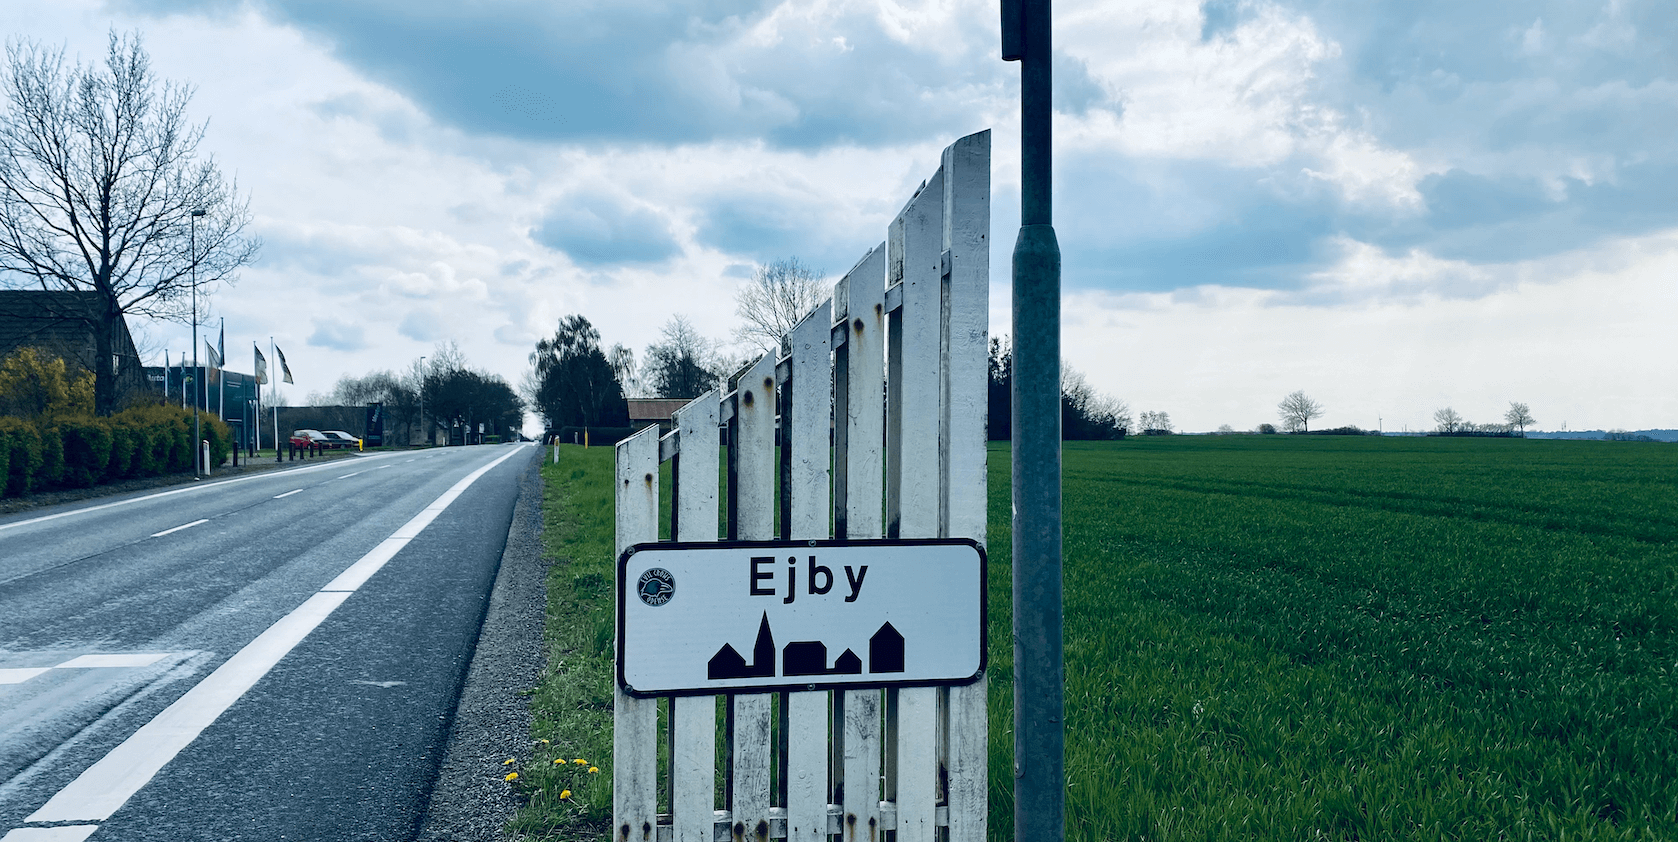 Ejby er igen repræsenteret til Byens Bedste